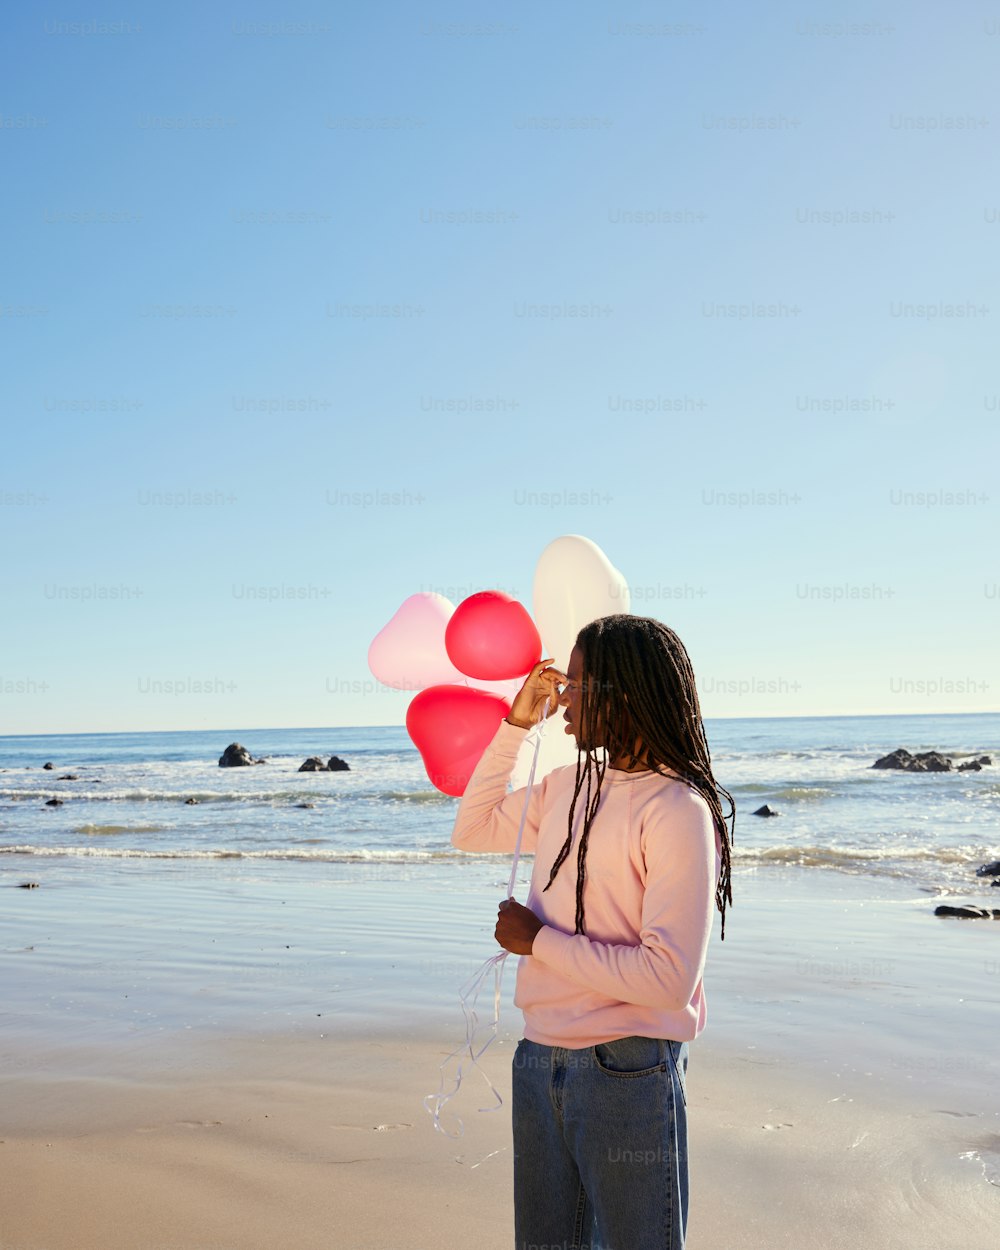 50,000+ Fotos de globos rosas  Descargar imágenes gratis en Unsplash